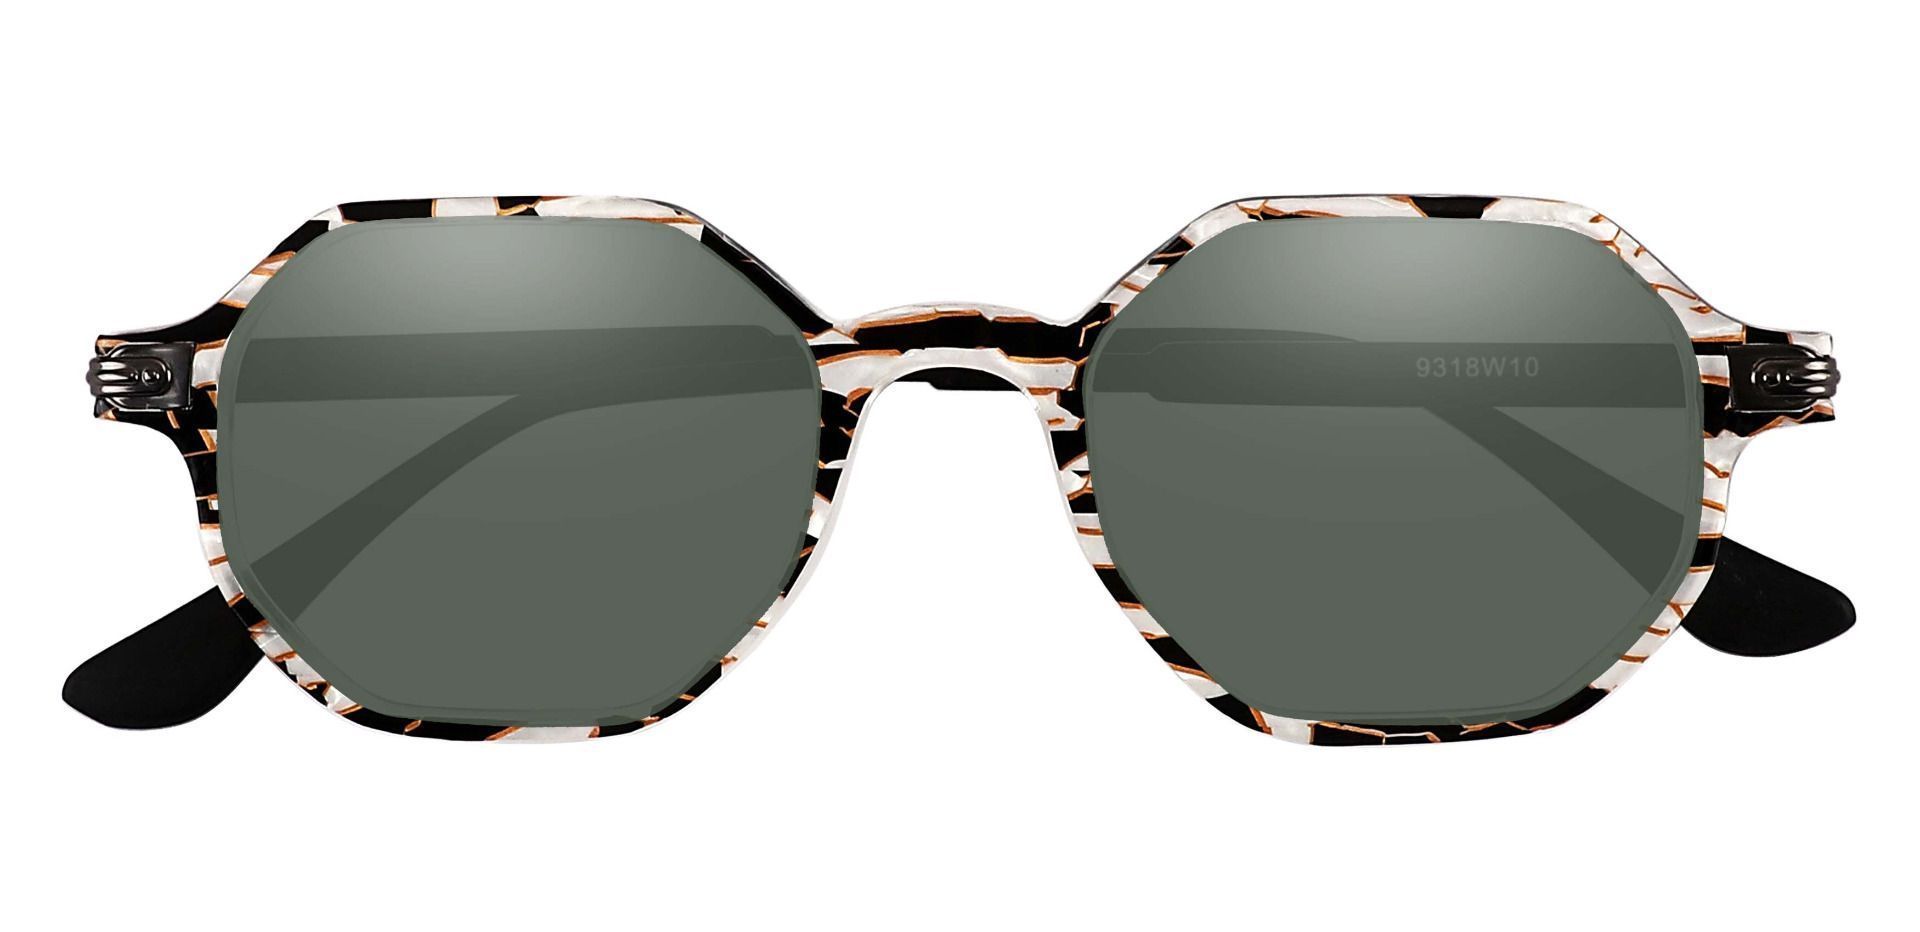 Bogart Geometric Prescription Sunglasses - Floral Frame With Green Lenses